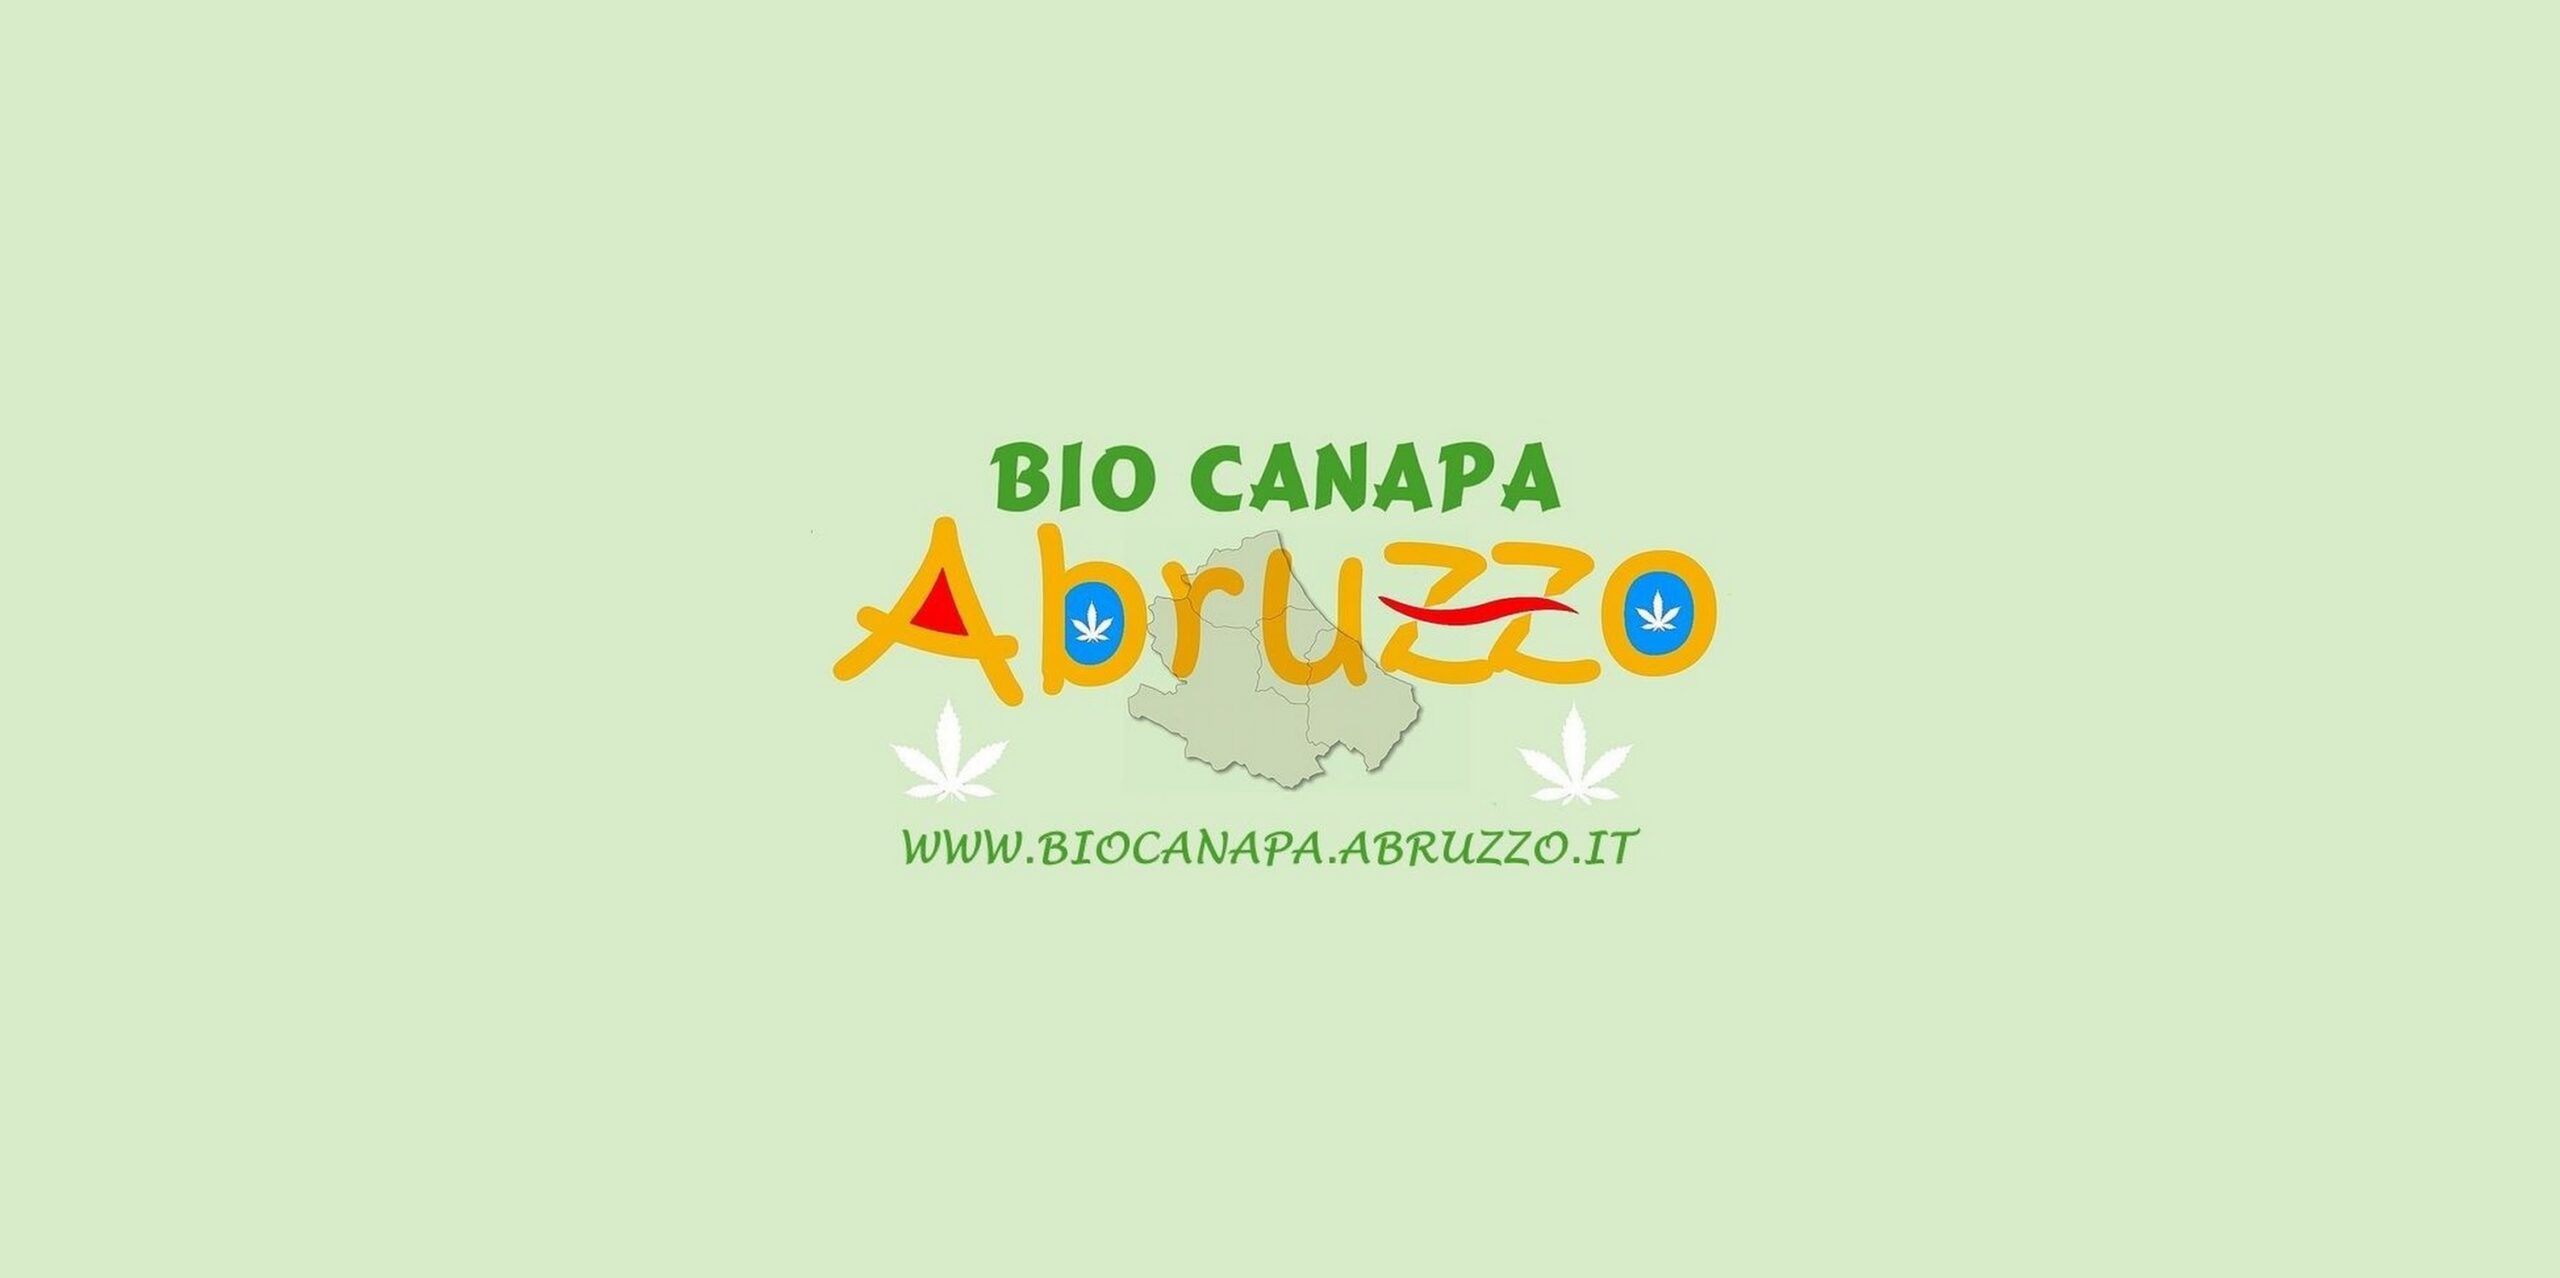 Bio Canapa Abruzzo